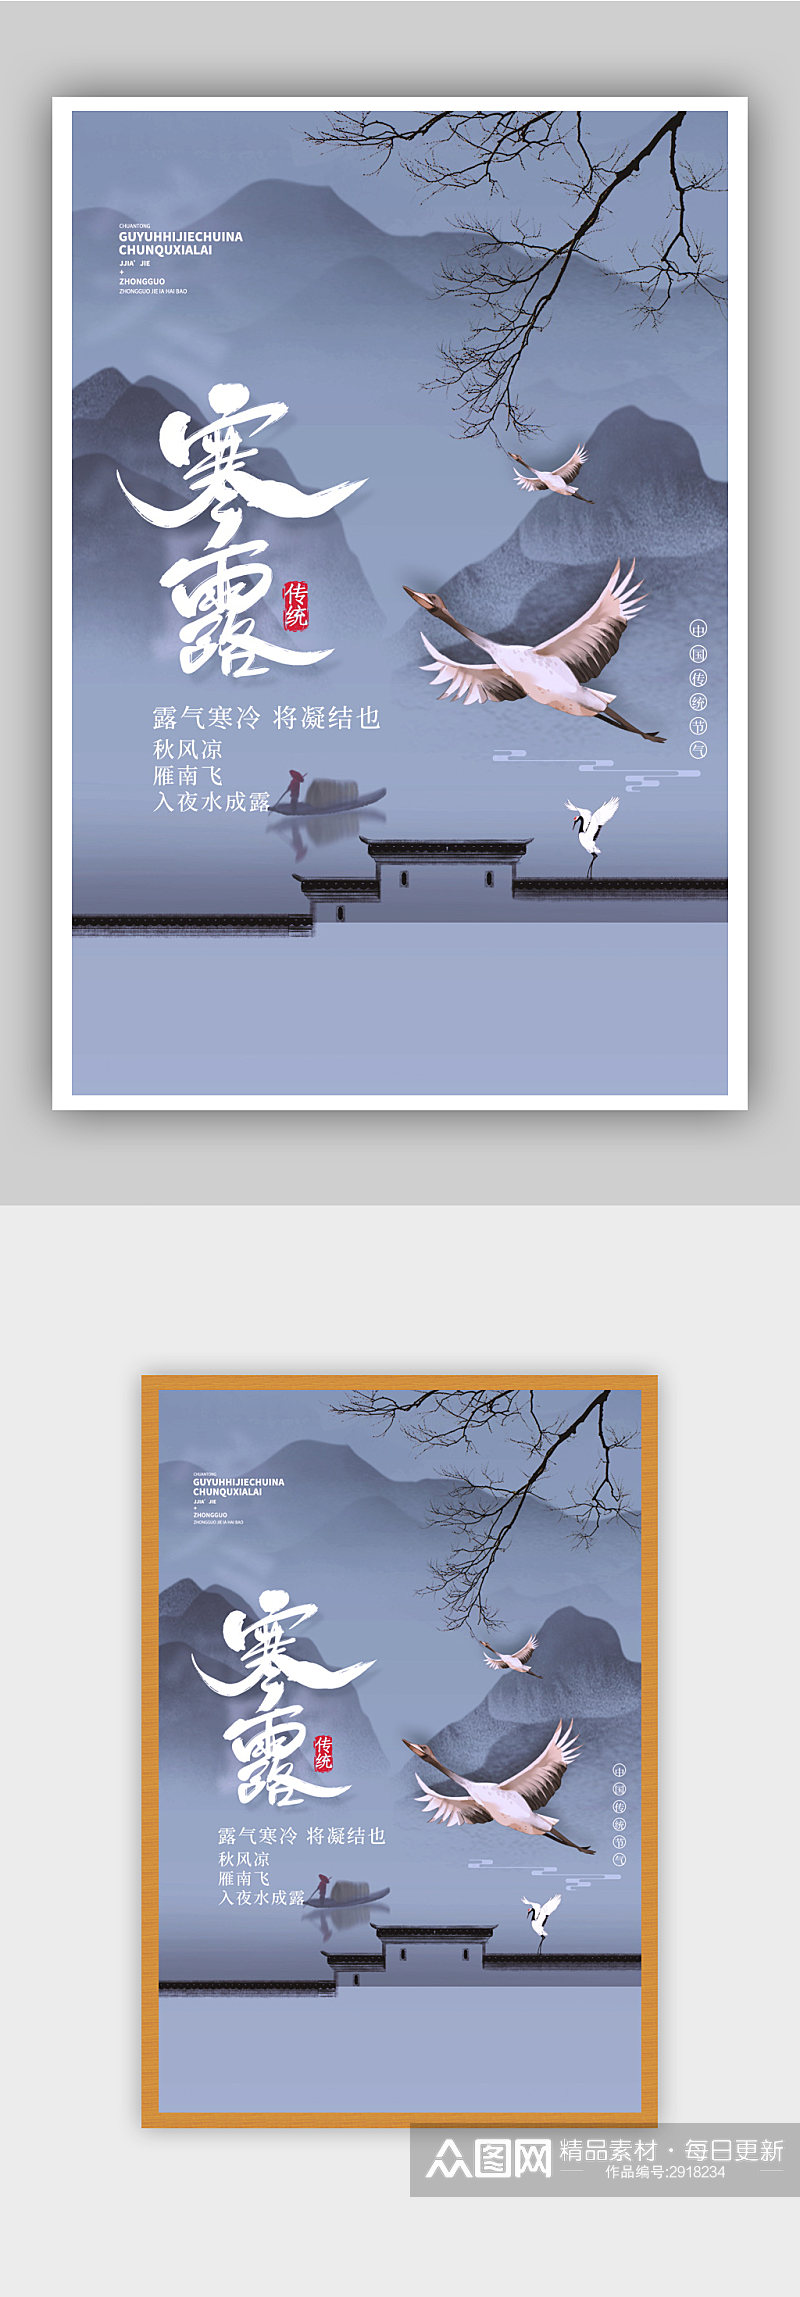 中国风寒露节气海报设计素材